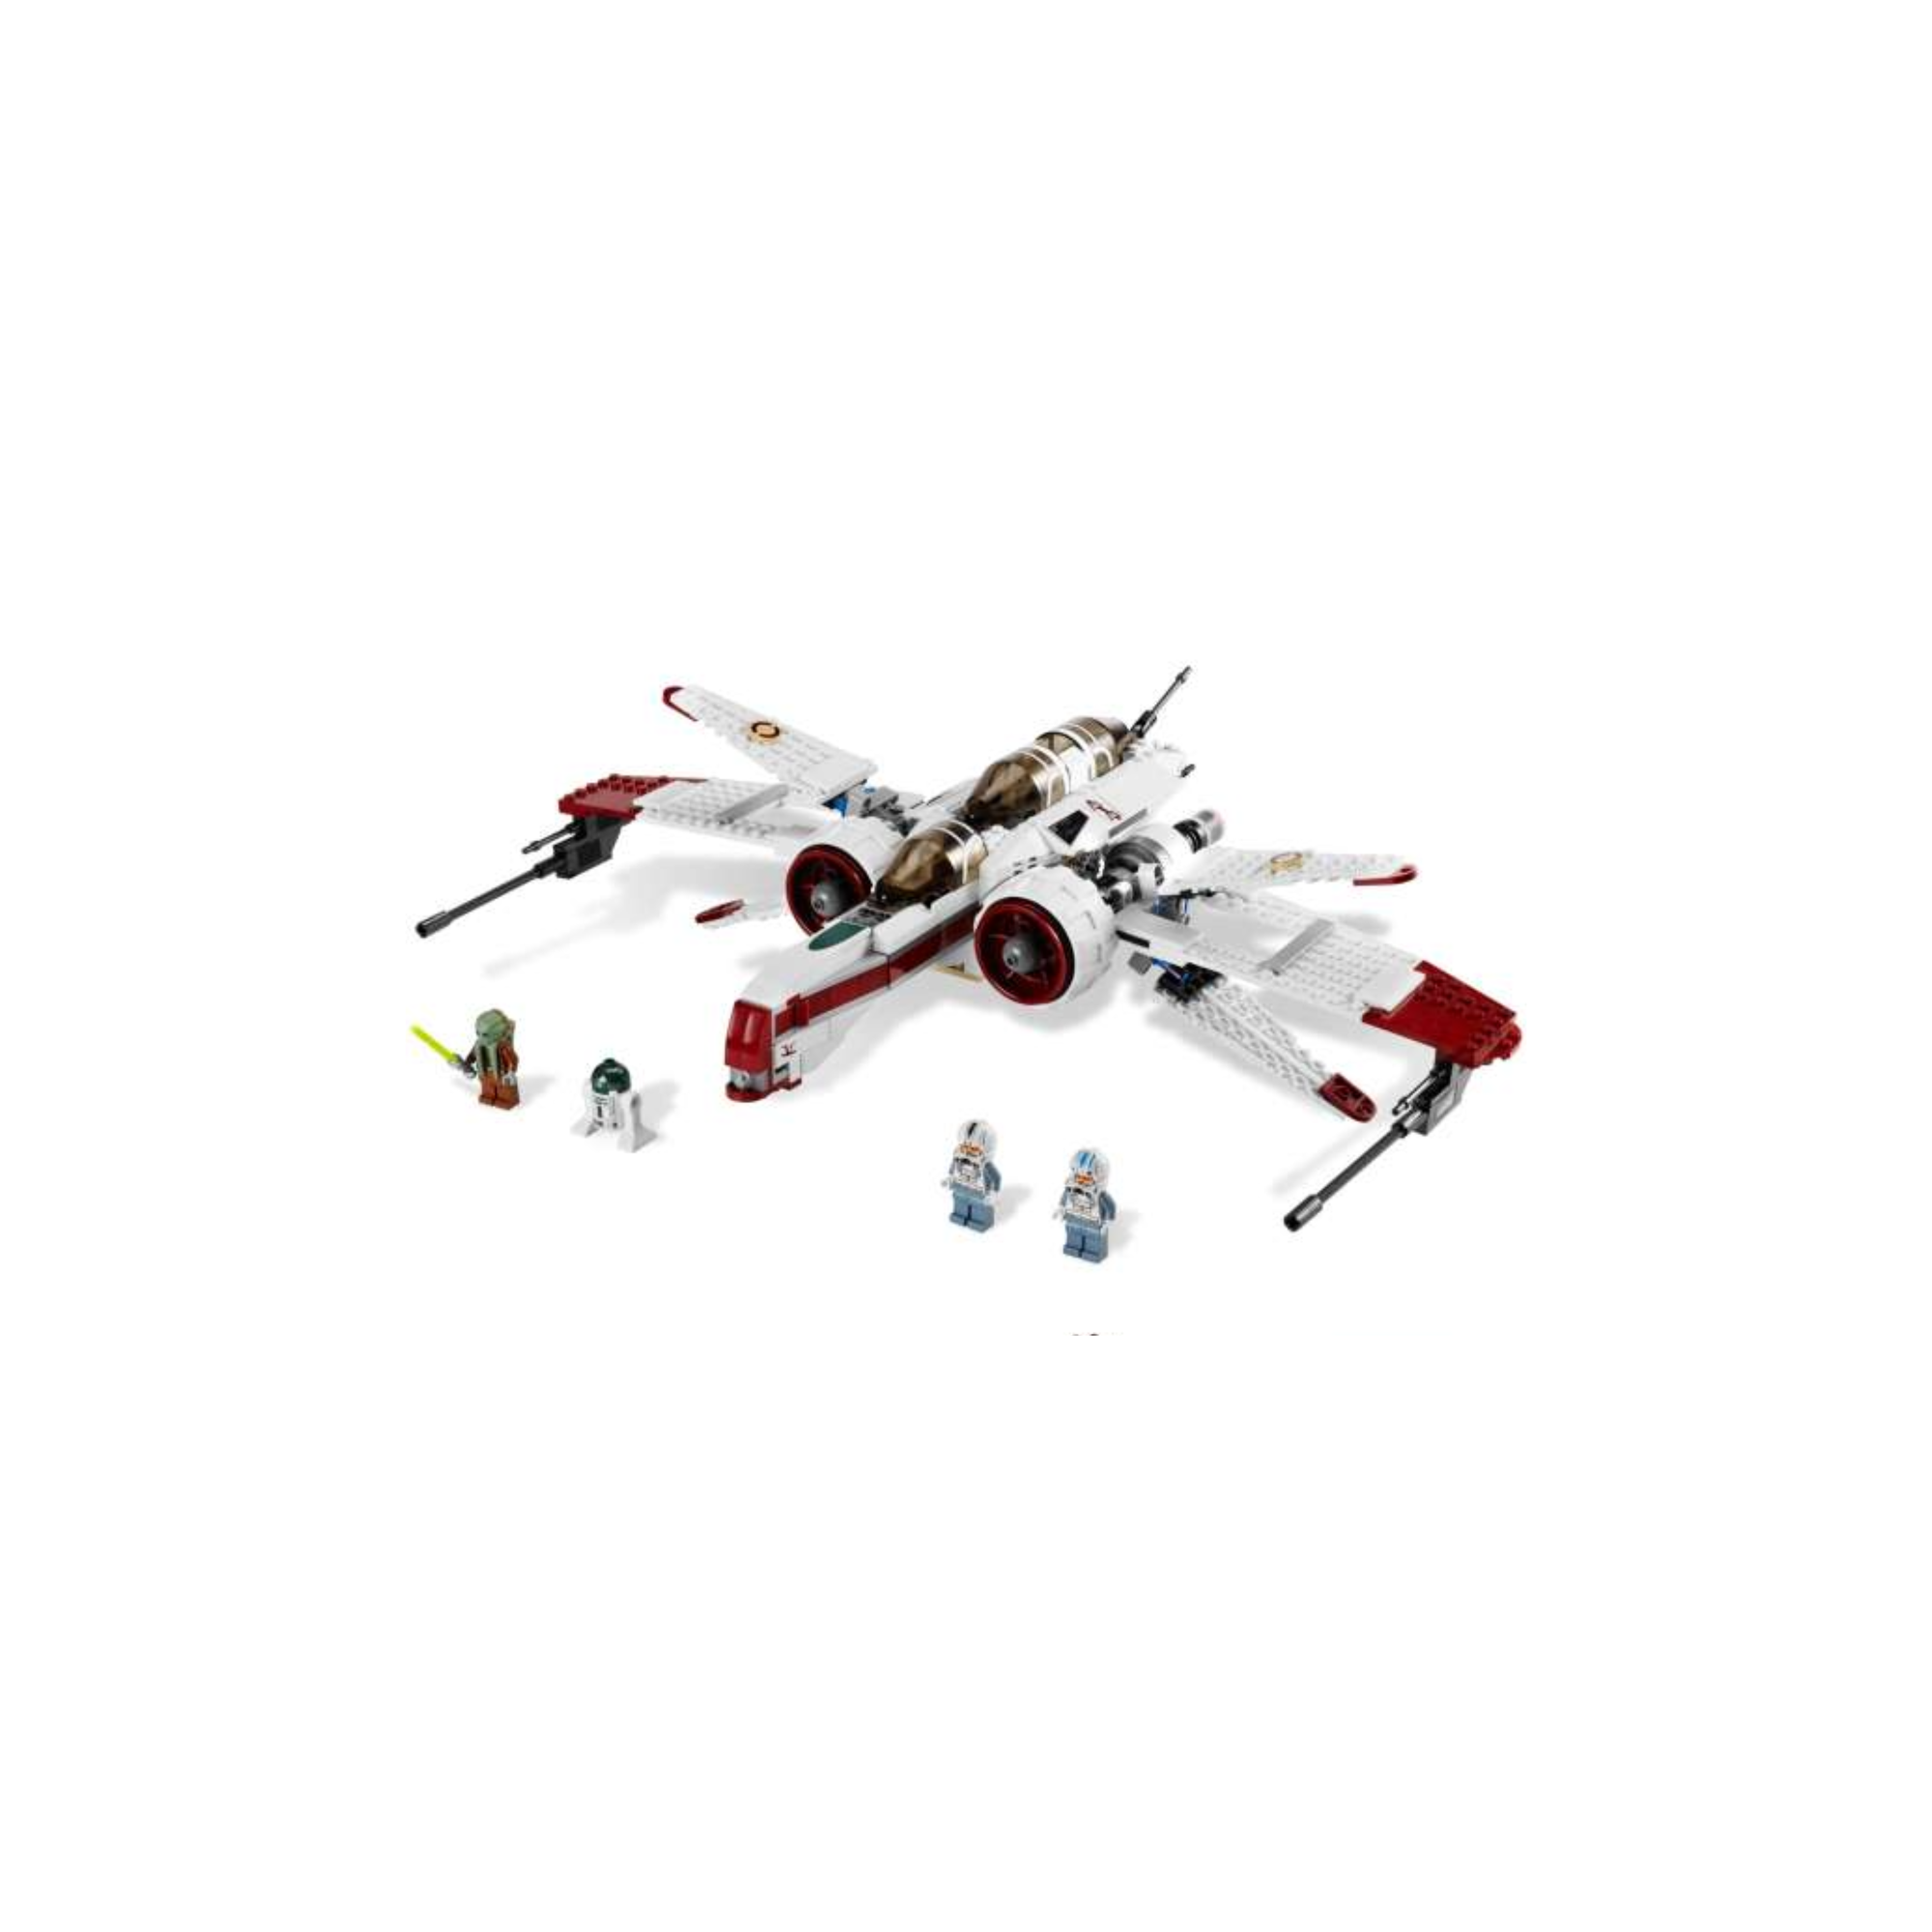 Lego Star Wars ARC-170 Starfighter